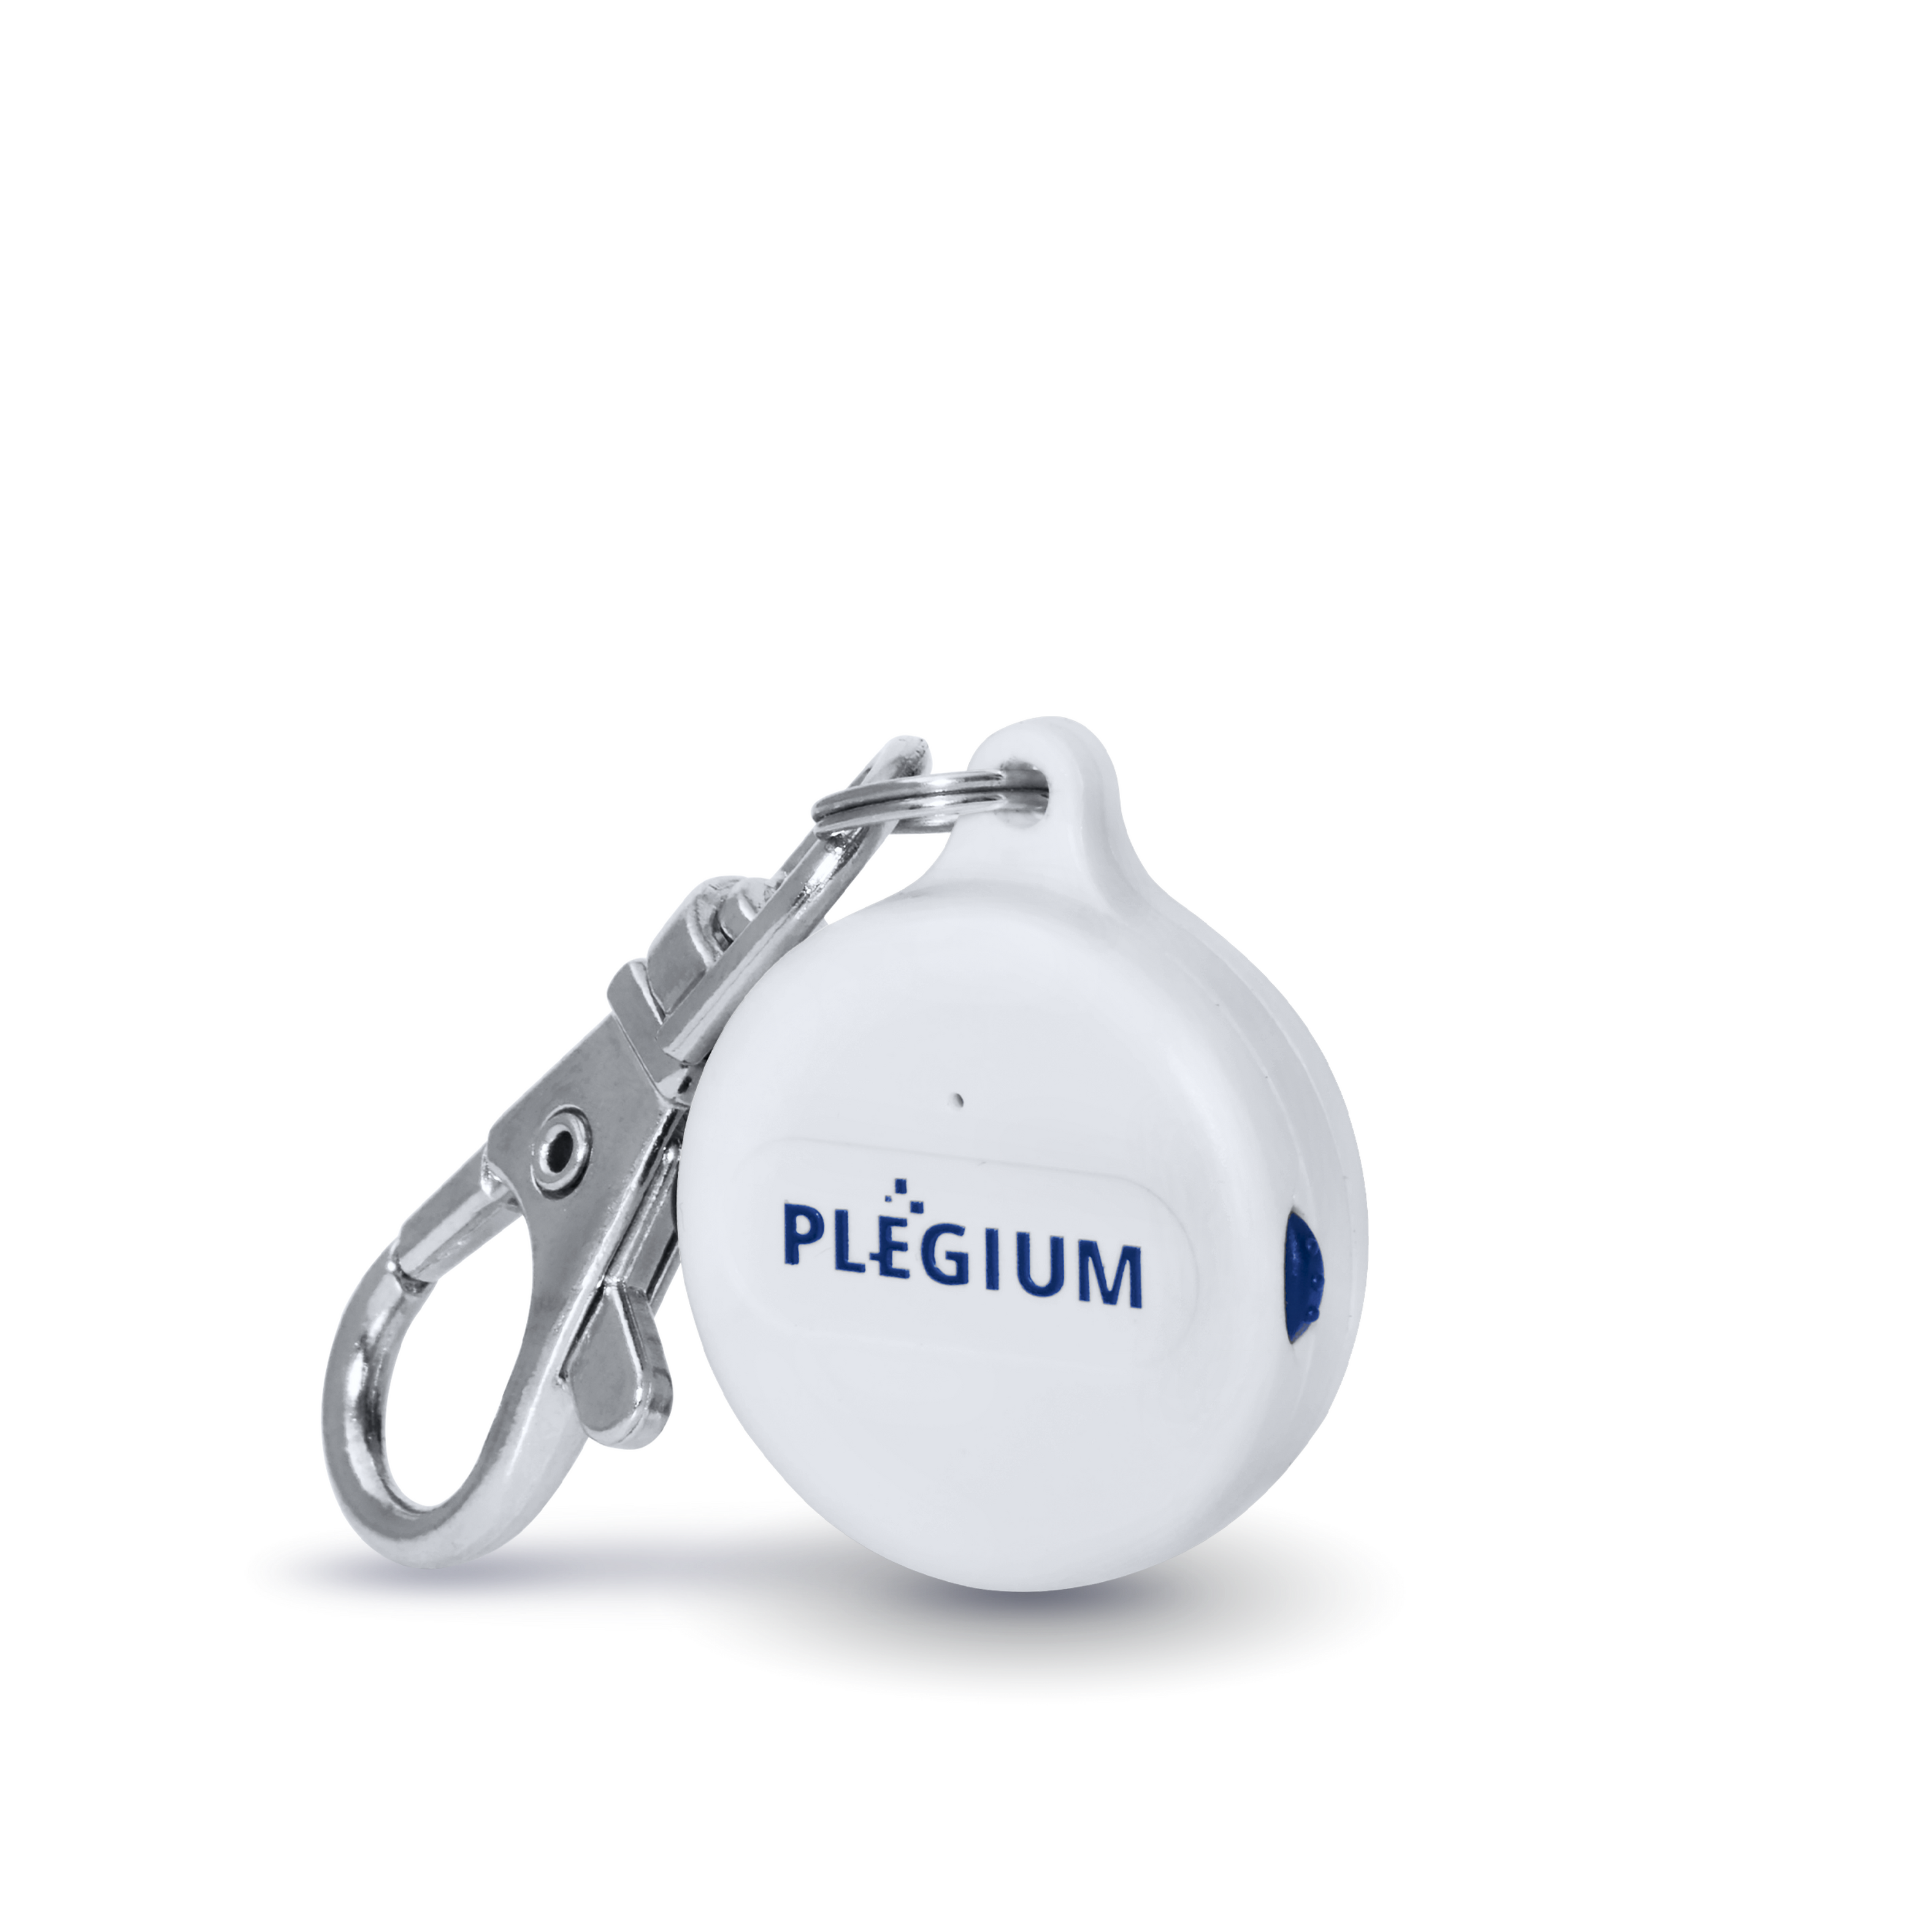 PLEGIUM Smart Emergency Button